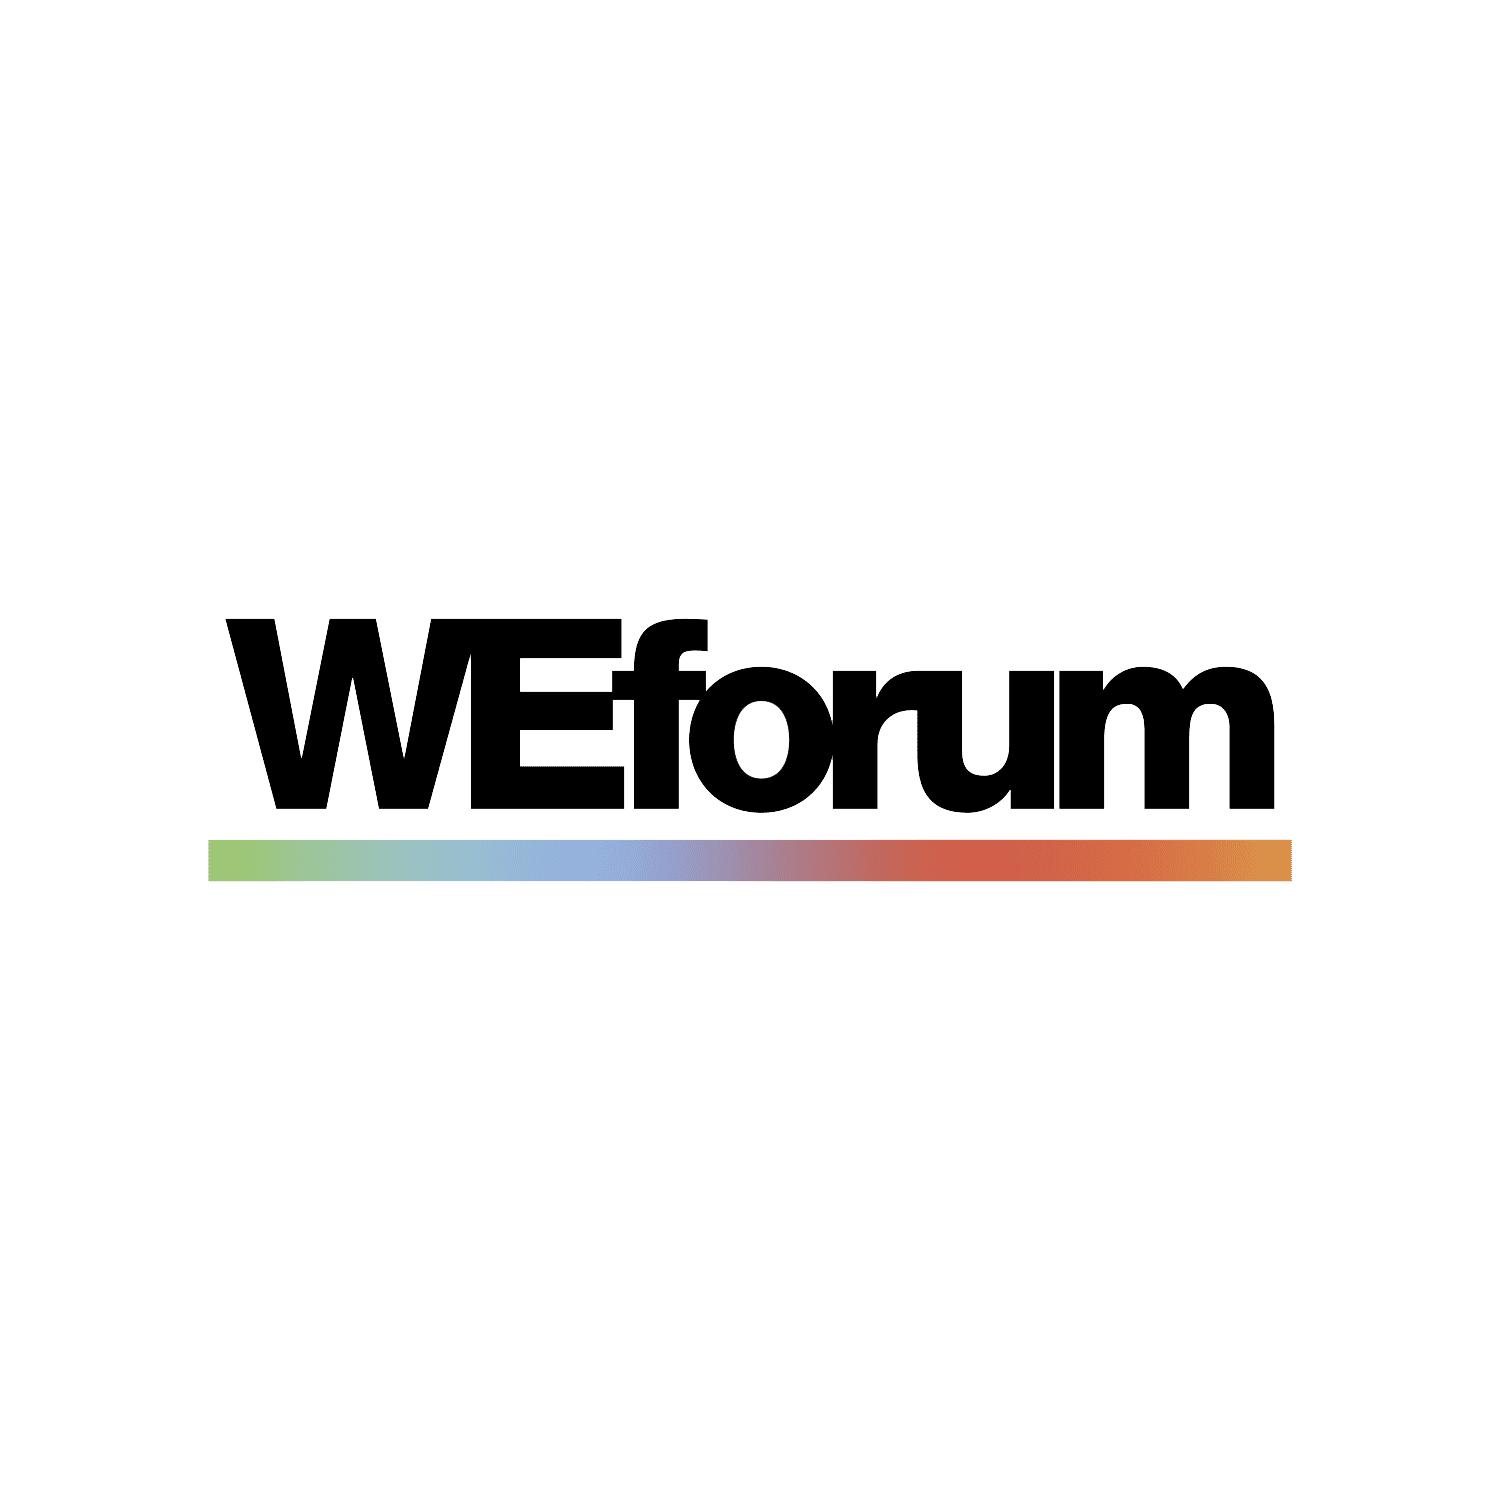 WEforum-LOGO-2020 copy